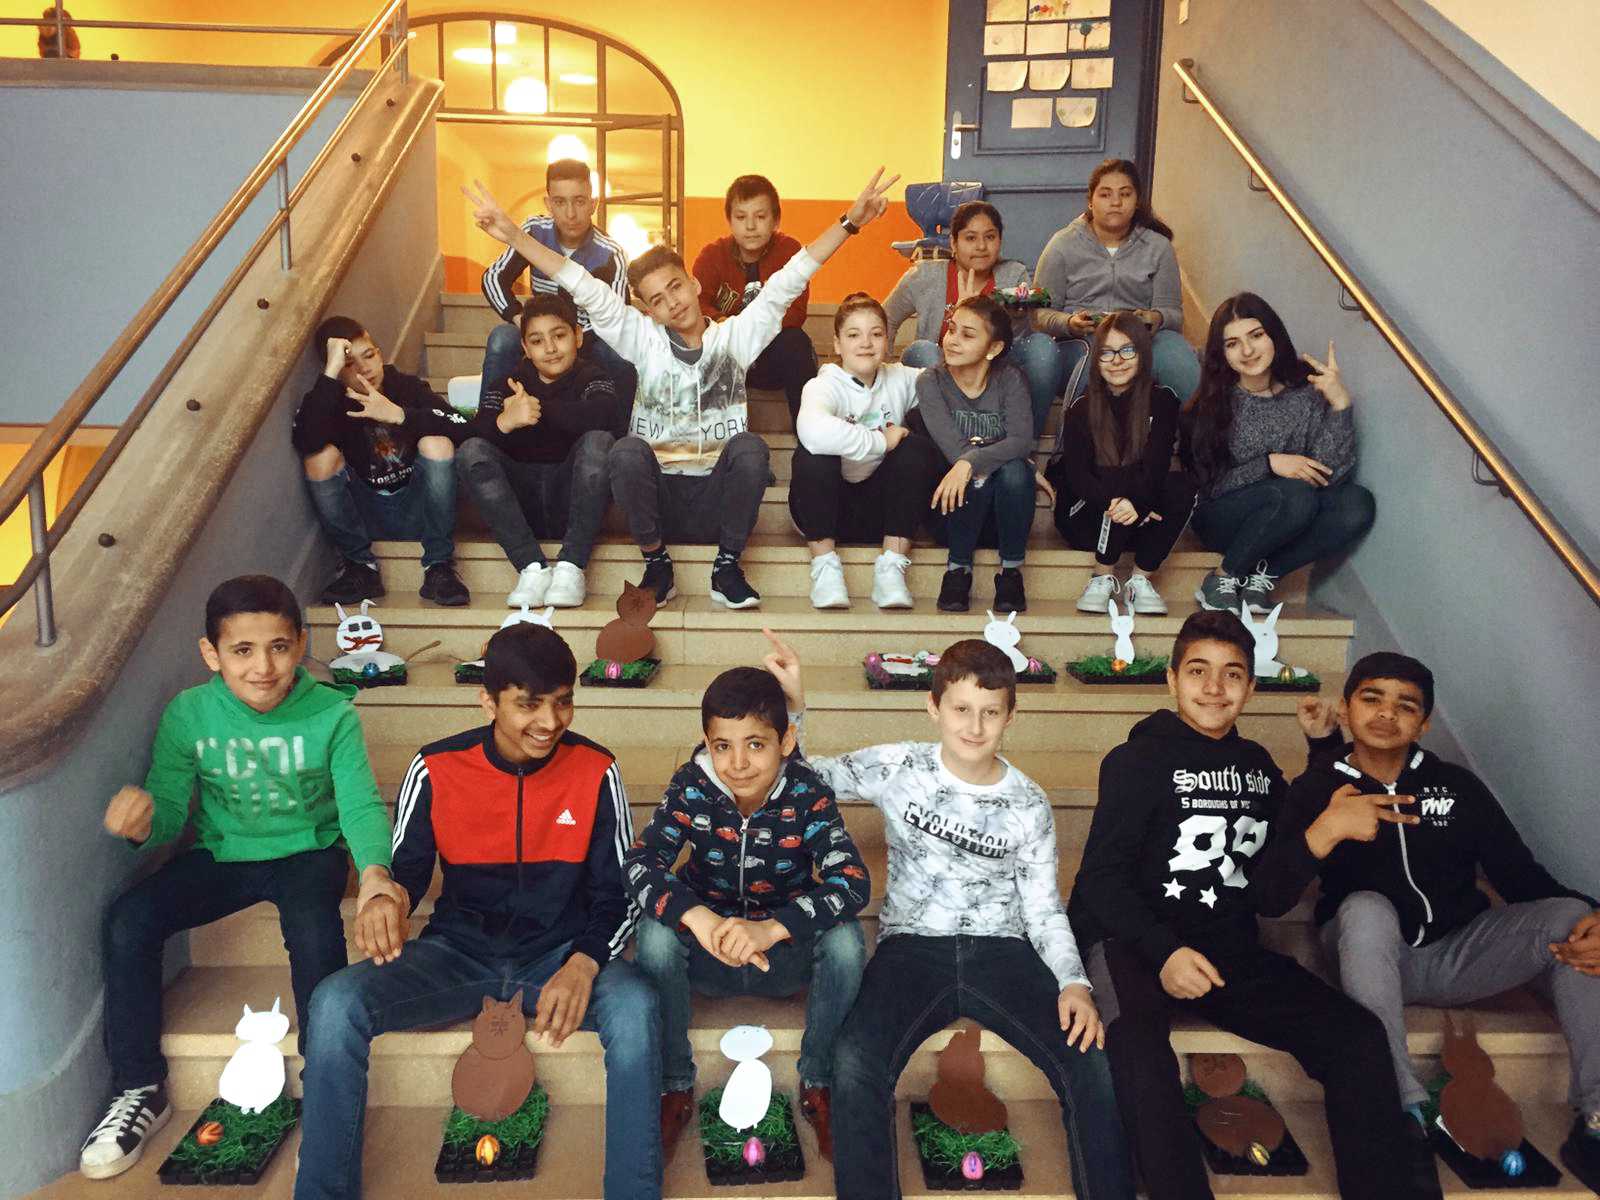 Auf diesem Bild sehen SieSchülerinnen und Schüler, die auf einer Treppe sitzen.